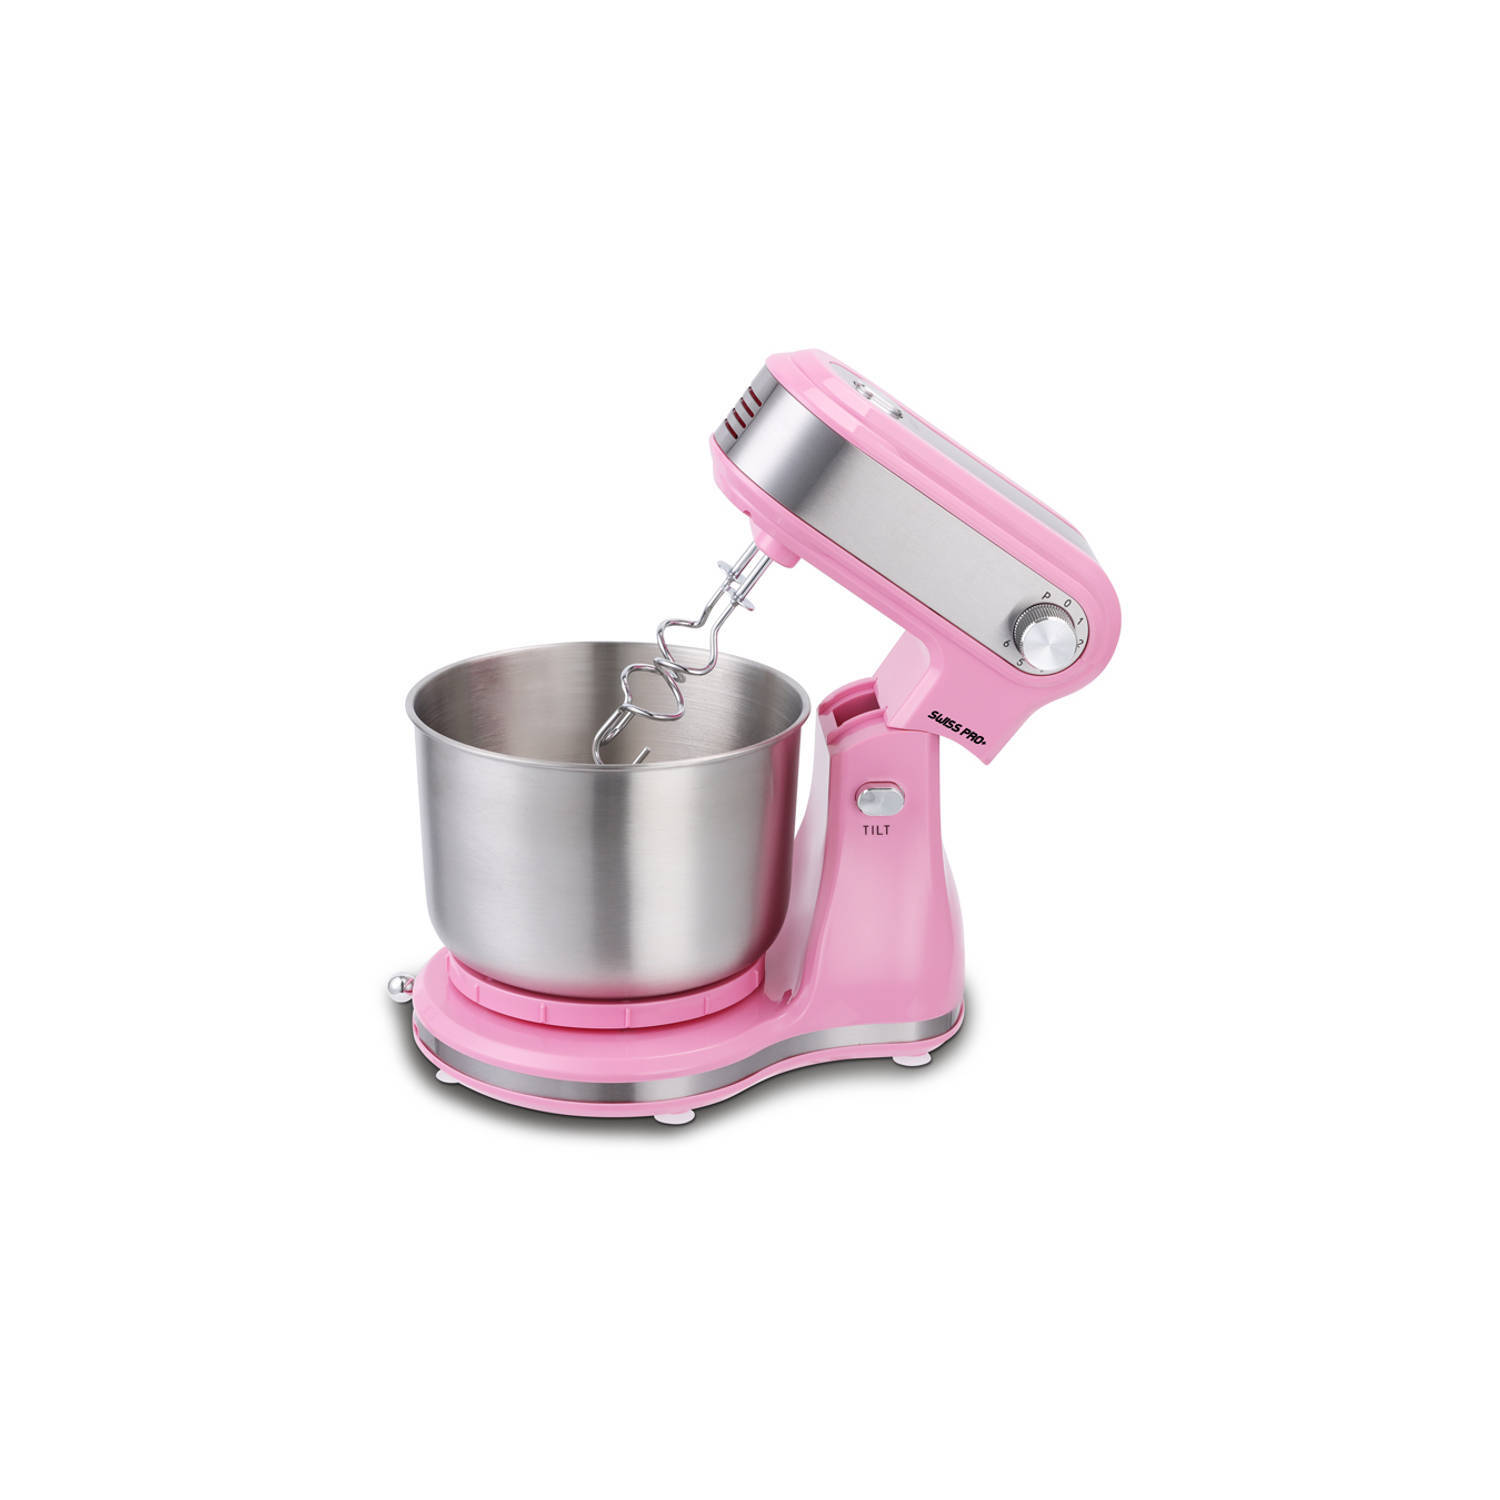 Swiss Pro+ keukenmachine 3.5l roze - 3.5 liter - 3.5 liter